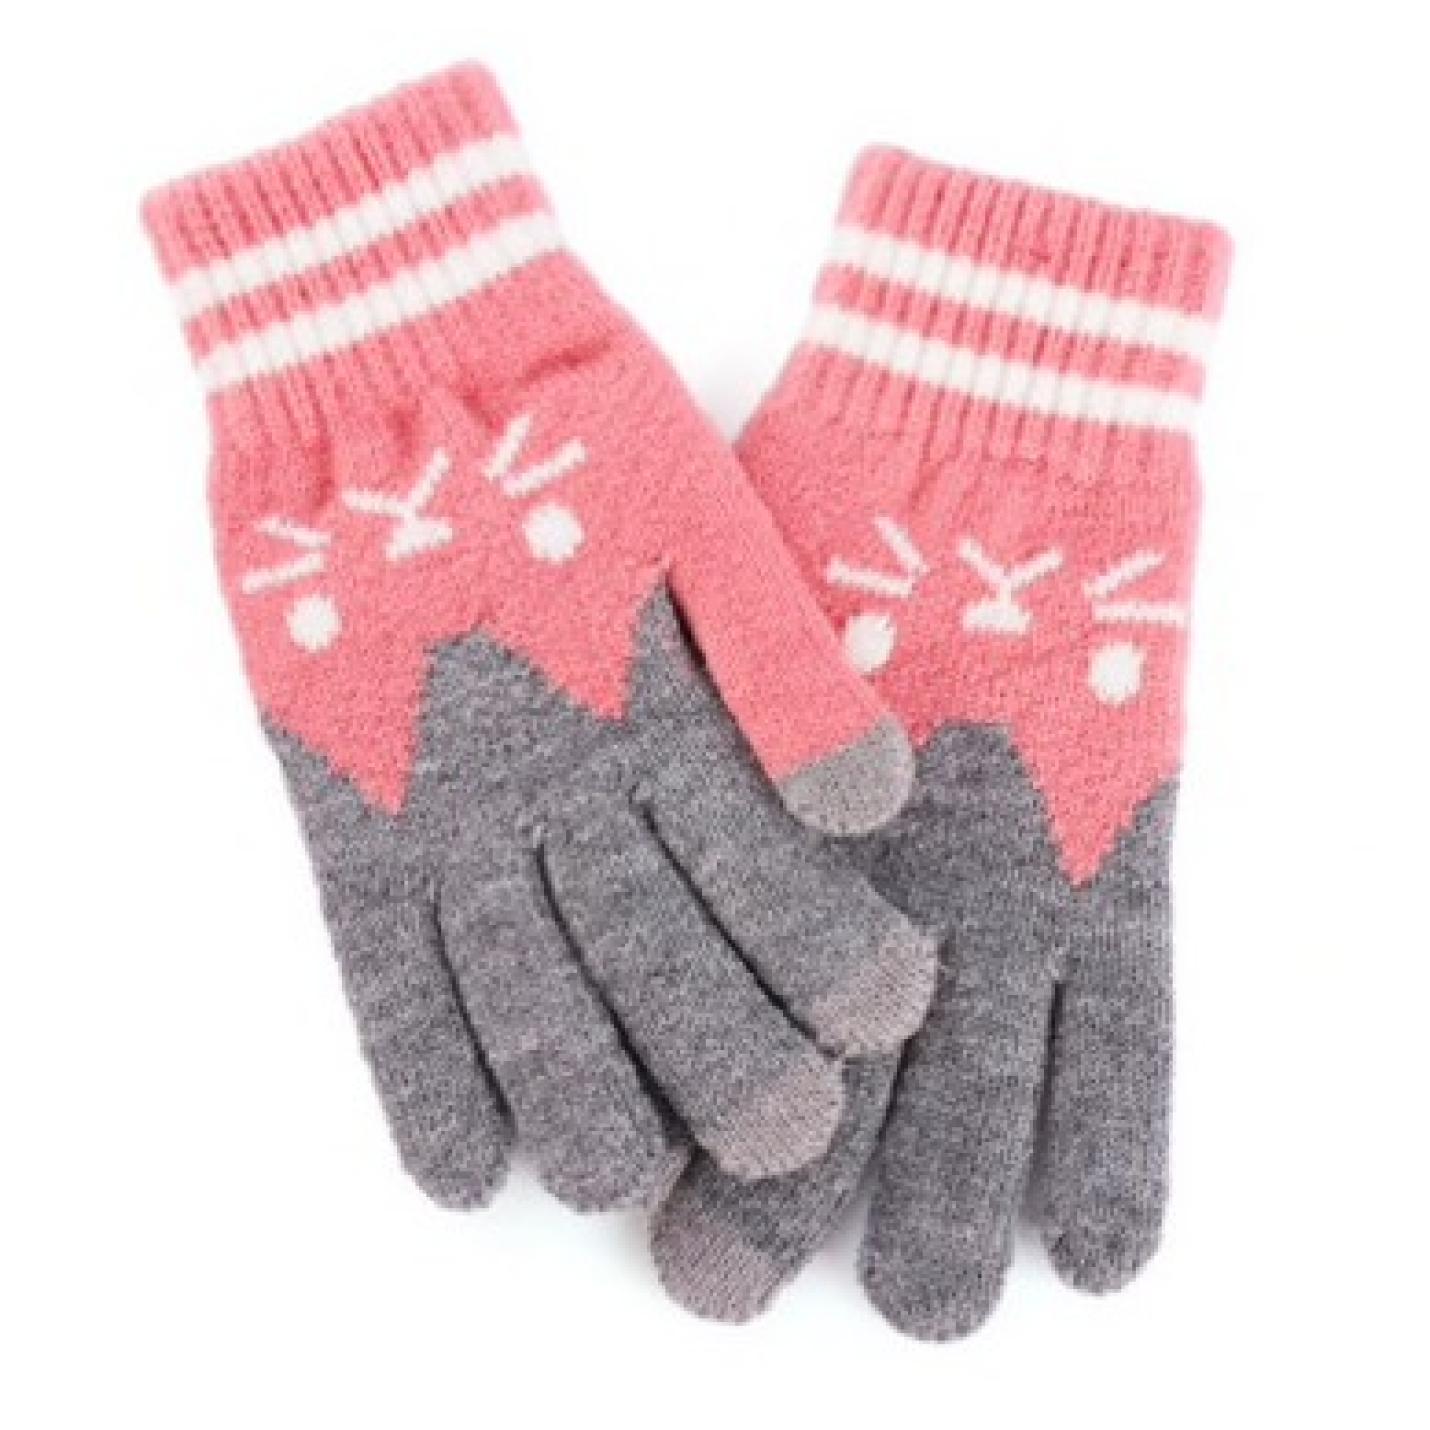 Hidzo Unisex Touchscreen handschoenen Roze/grijs Maat S/M